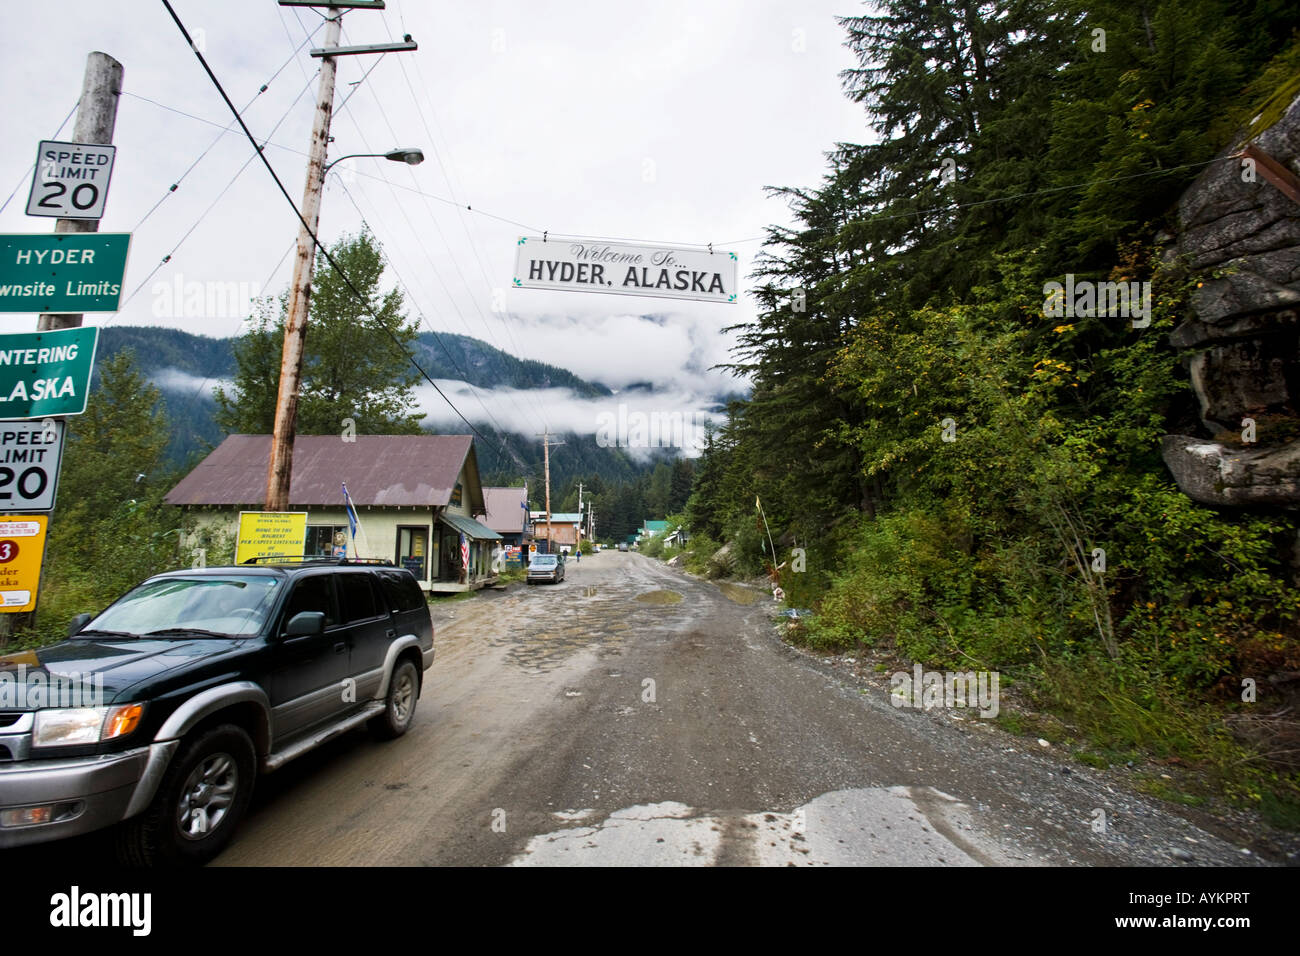 Camino de tierra en la Hyder, Alaska Foto de stock